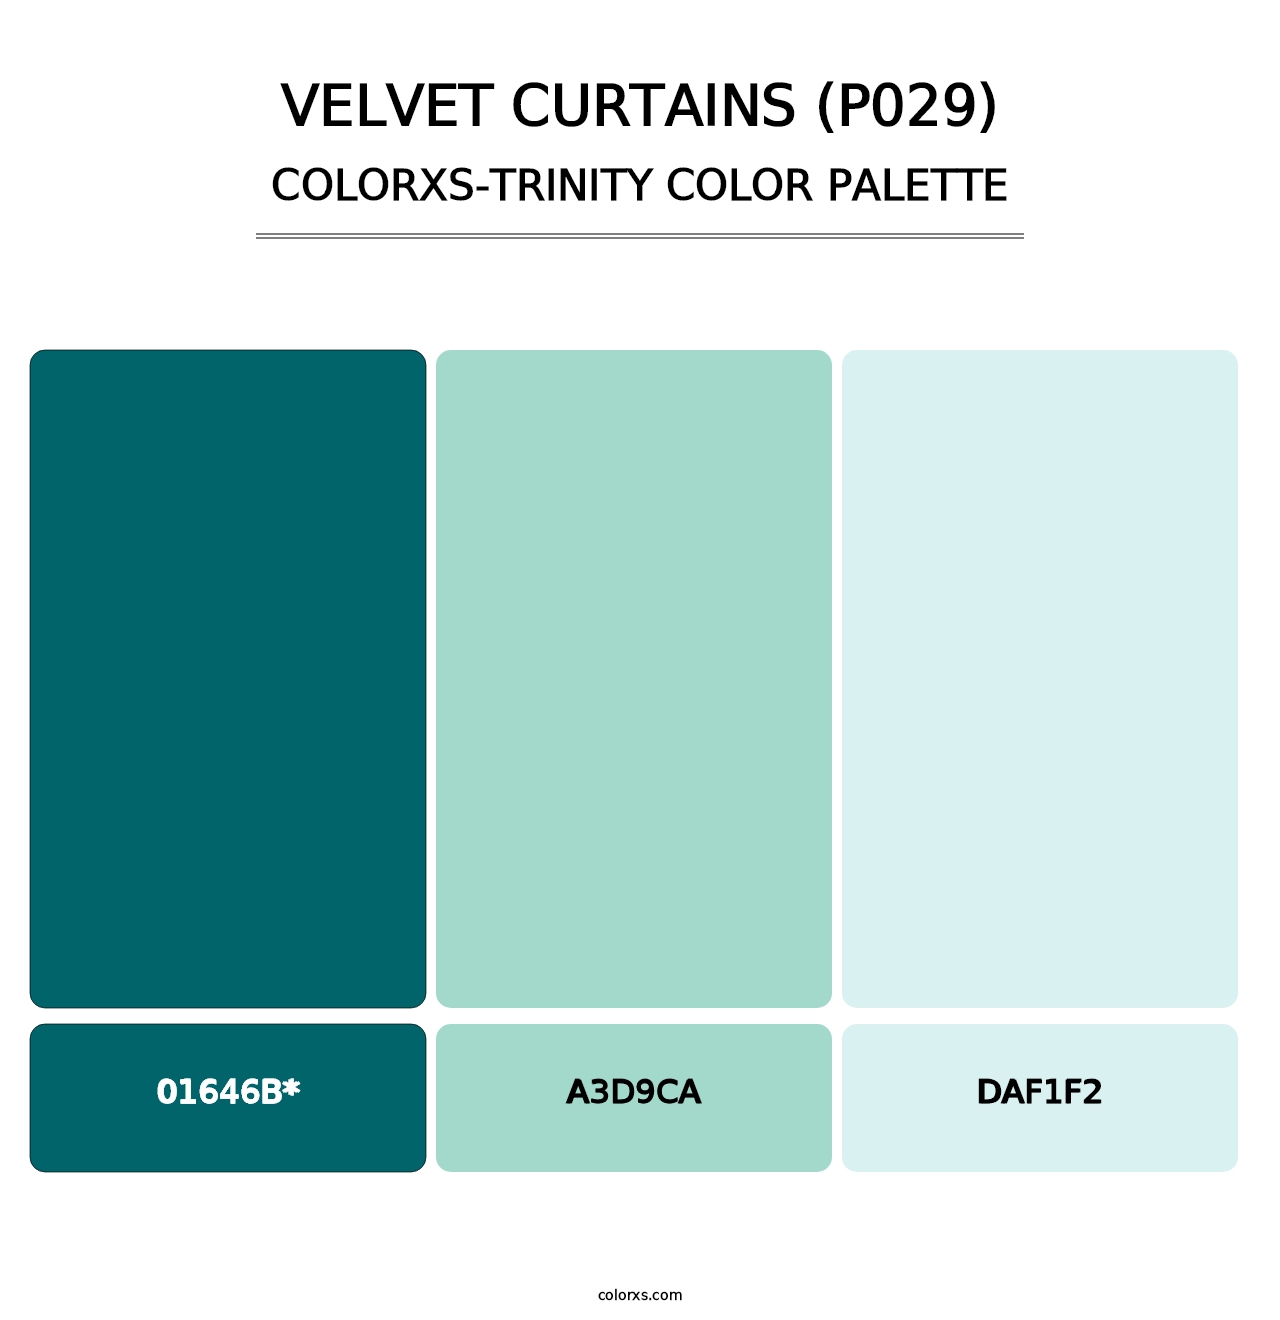 Velvet Curtains (P029) - Colorxs Trinity Palette